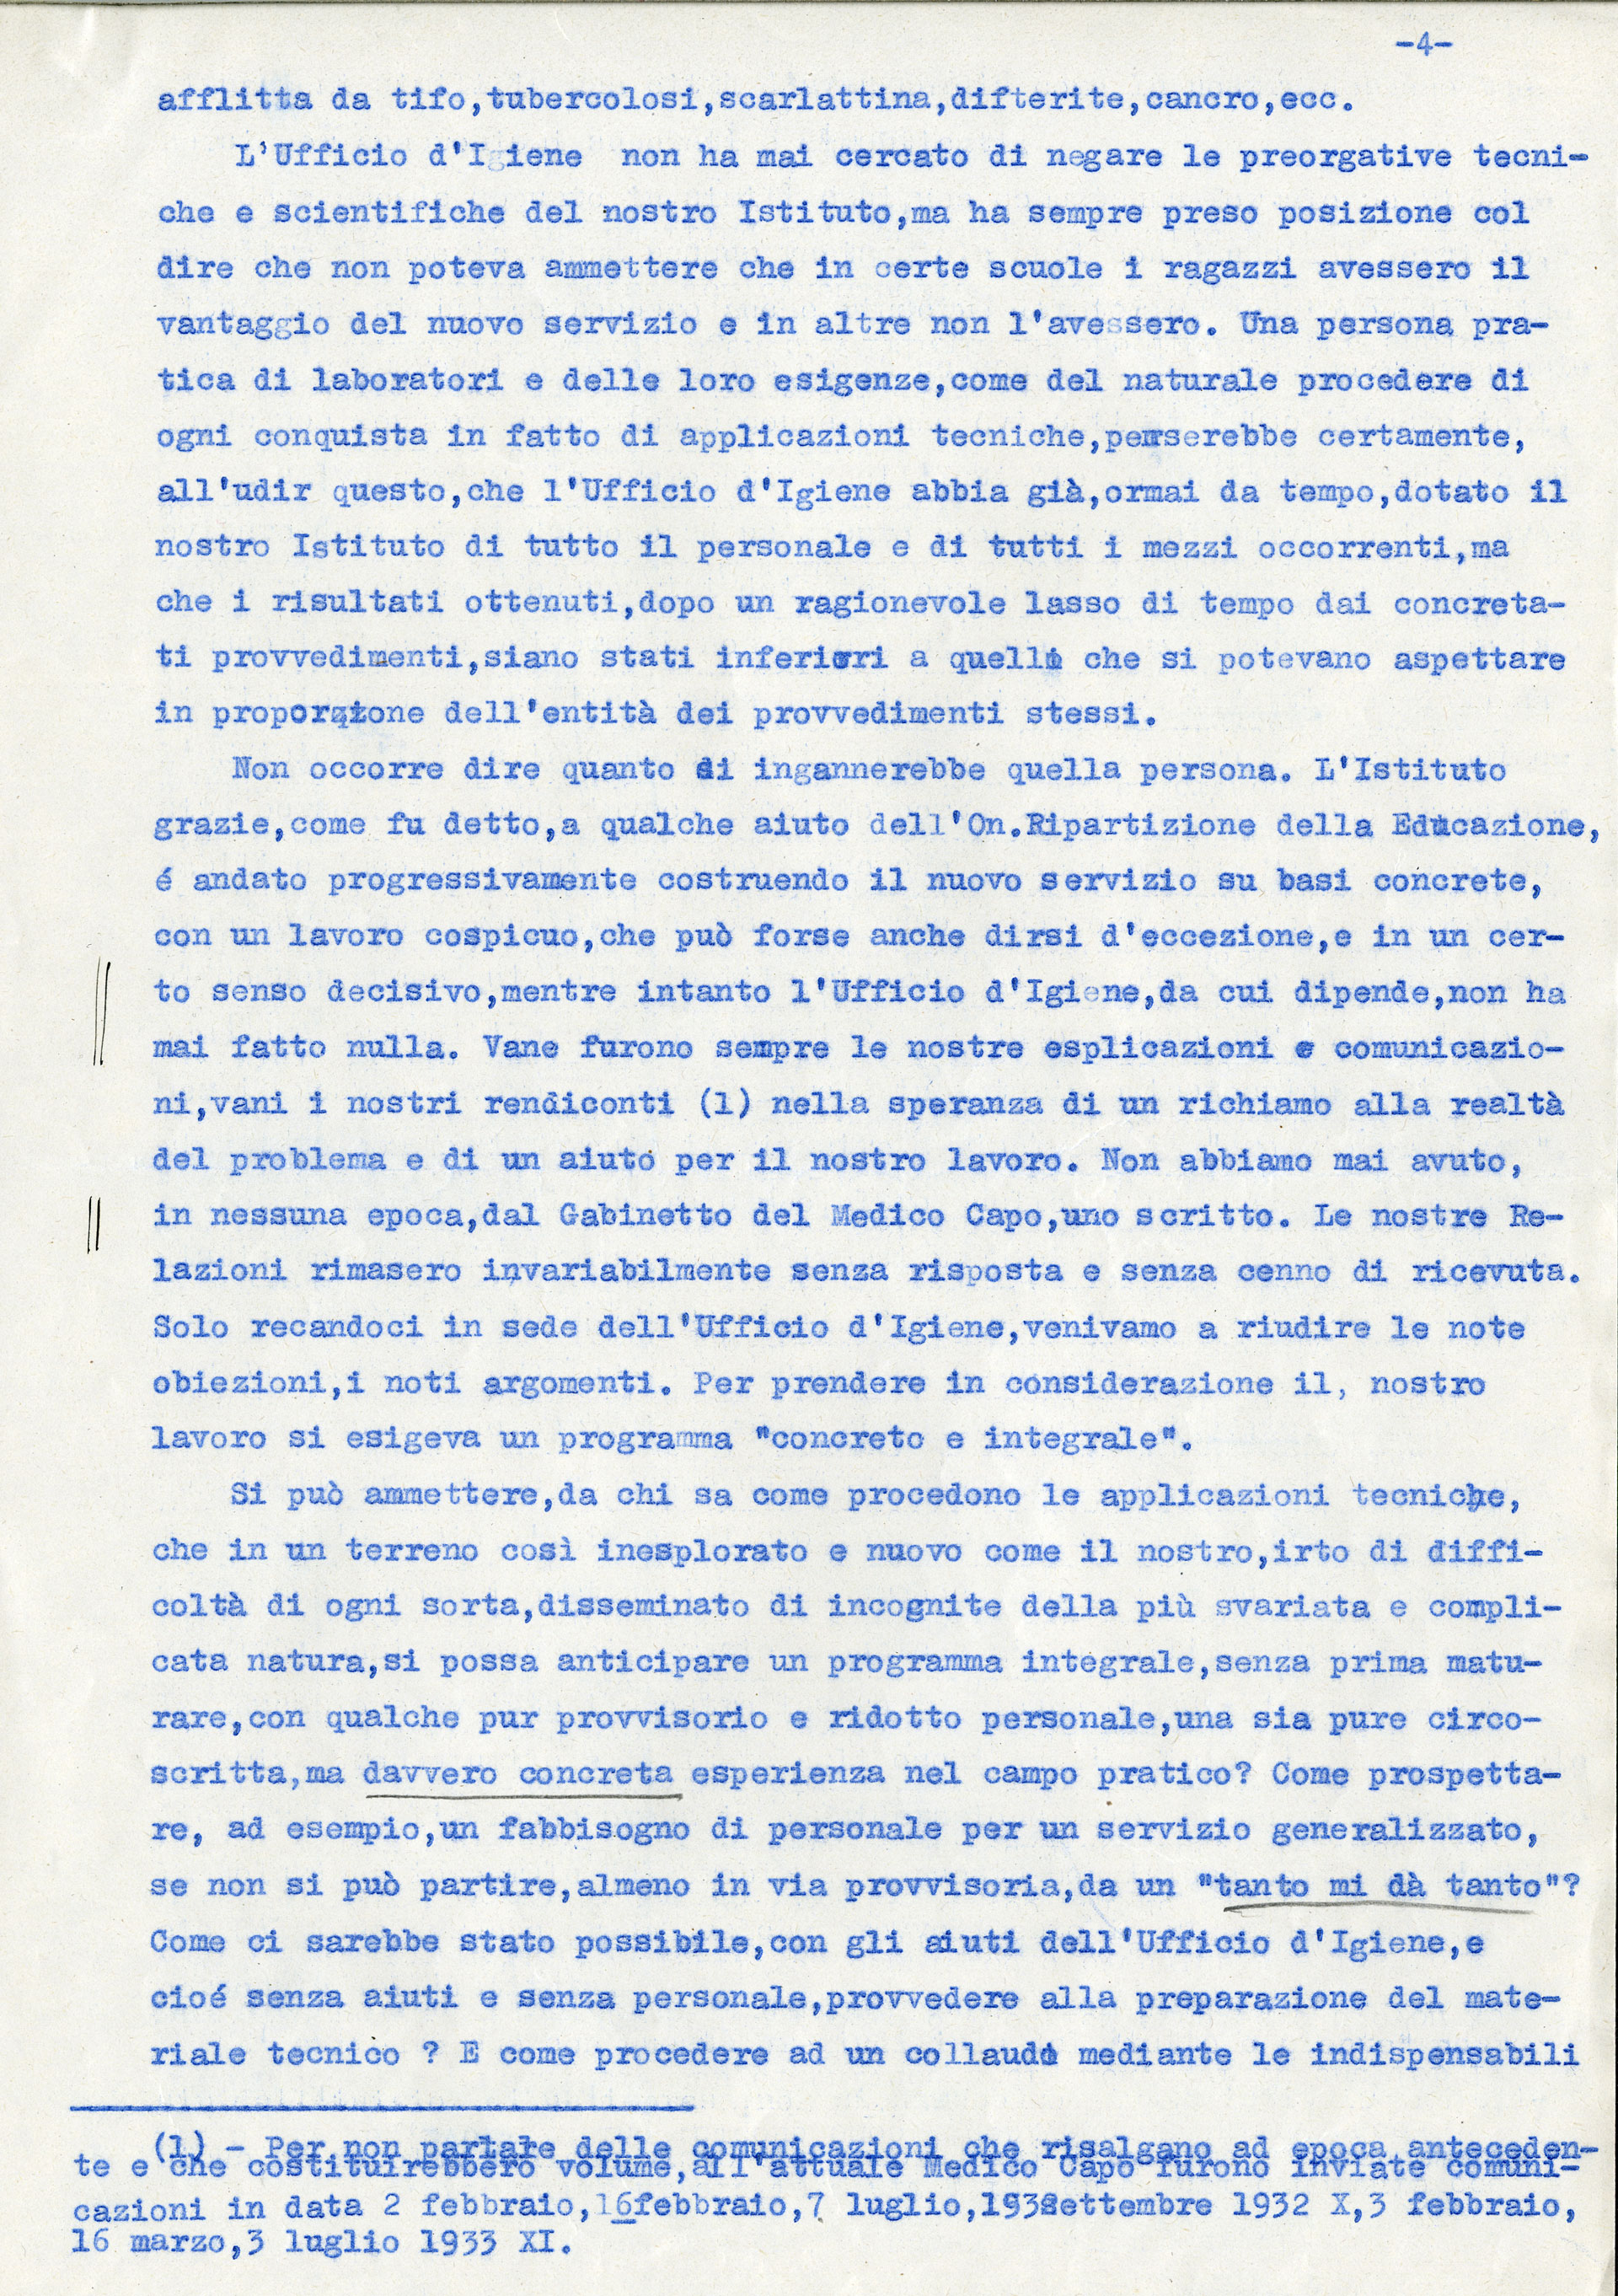 Relazione di Casimiro Doniselli sui difficili rapporti tra il “Civico Istituto di Psicologia Sperimentale” e l’Ufficio d’igiene del Comune di Milano, 1933